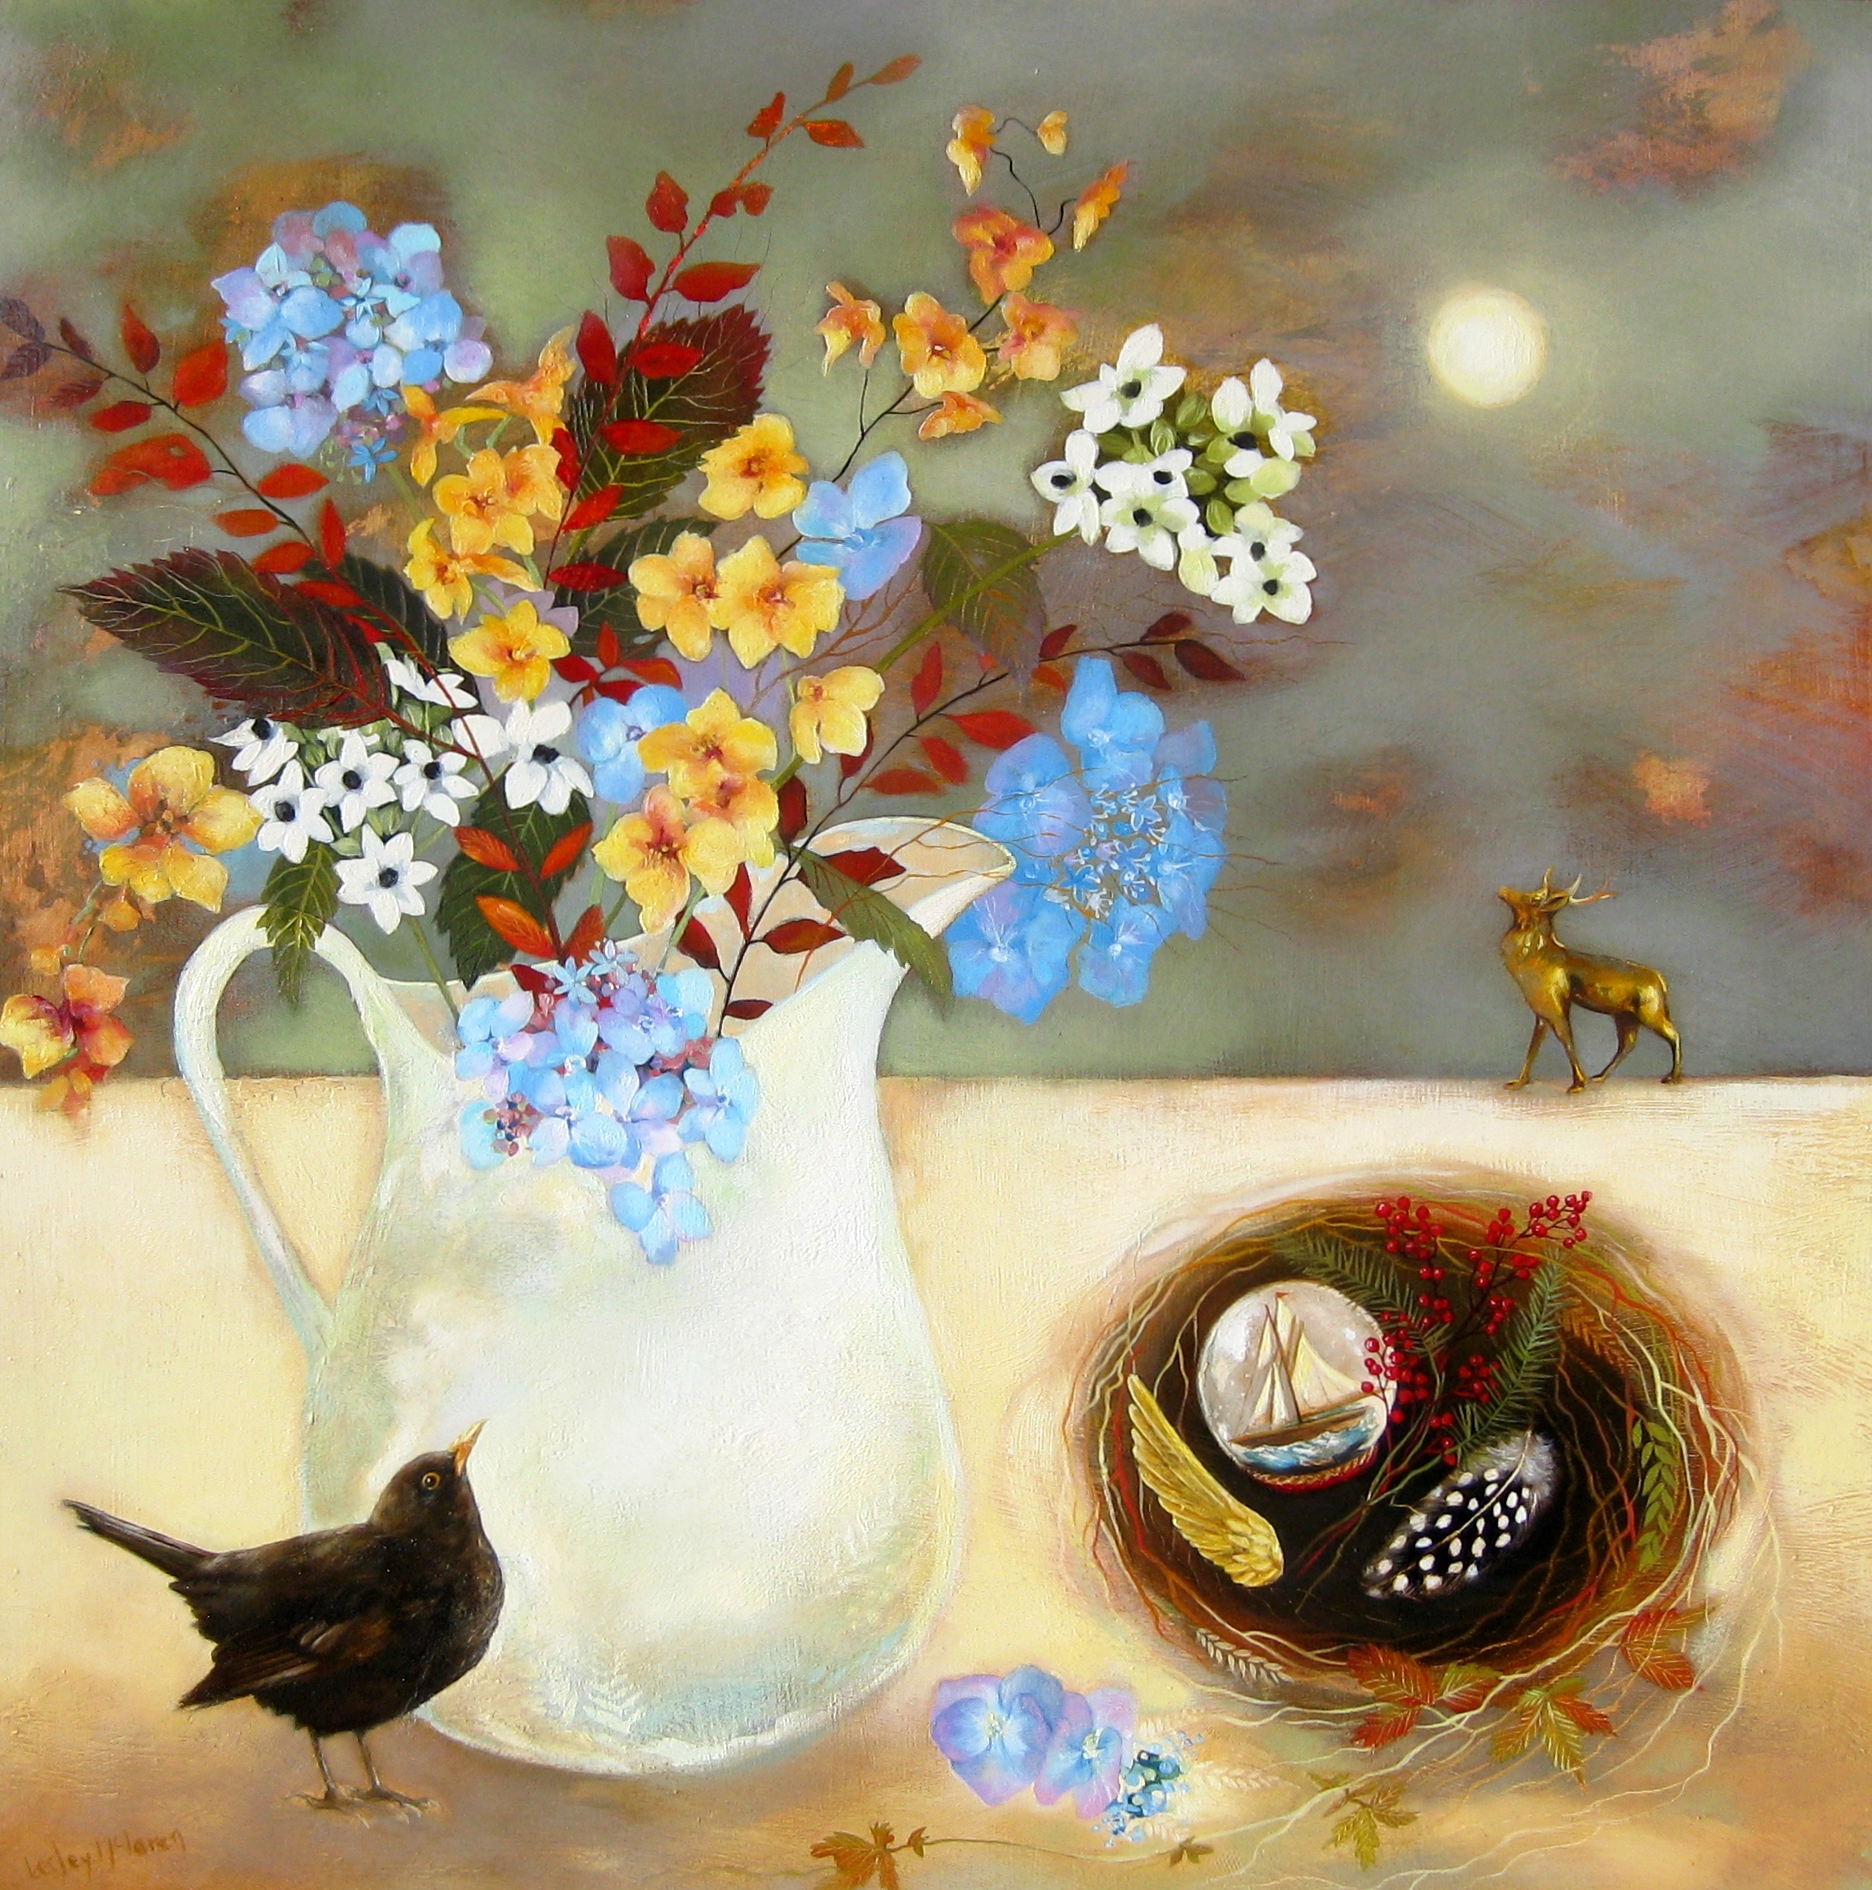 'Moonlit Blooms' by artist Lesley McLaren